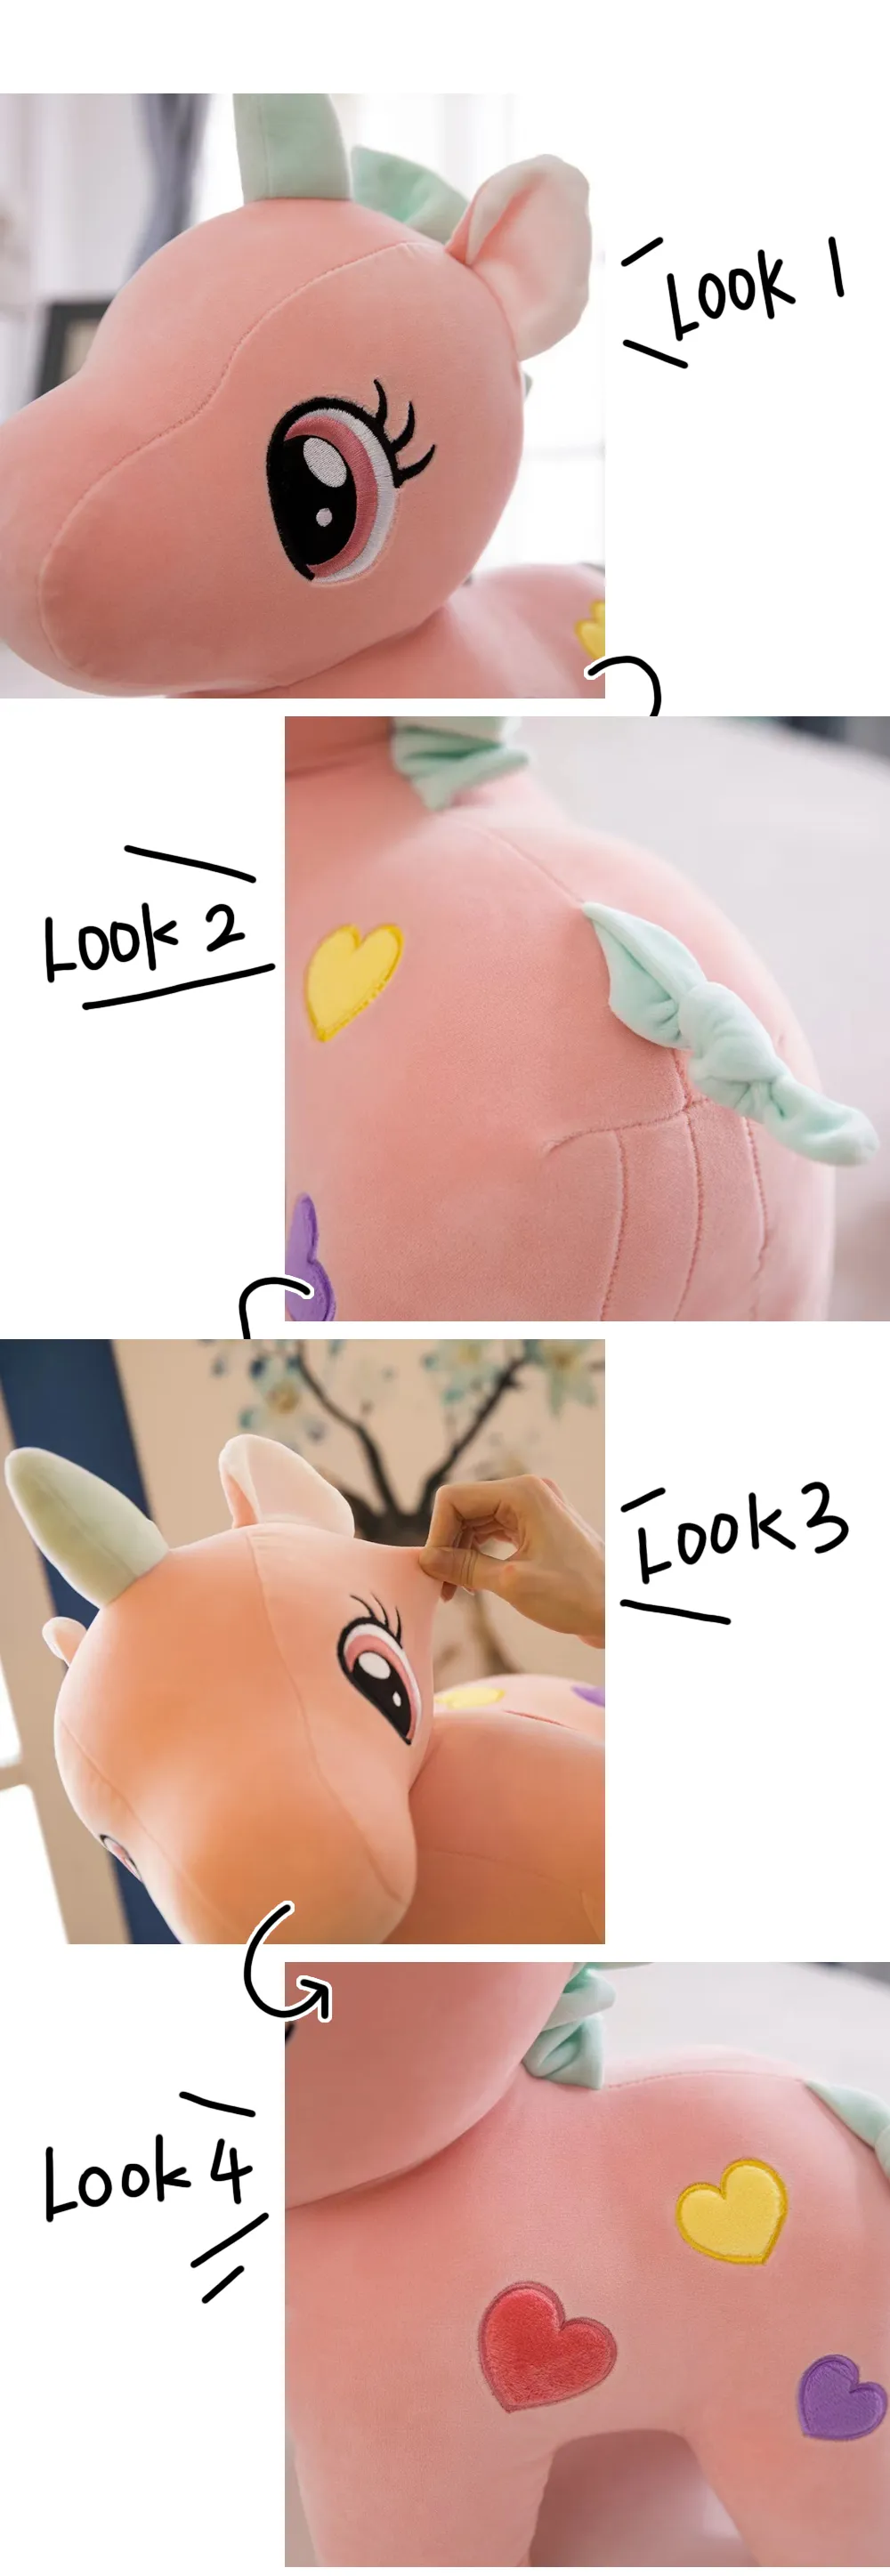 Lindo Kawaii suave 18cm sentado multicolor unicornio animales de peluche chico juguetes personalizado 100% algodón orgánico unicornio peluche juguete